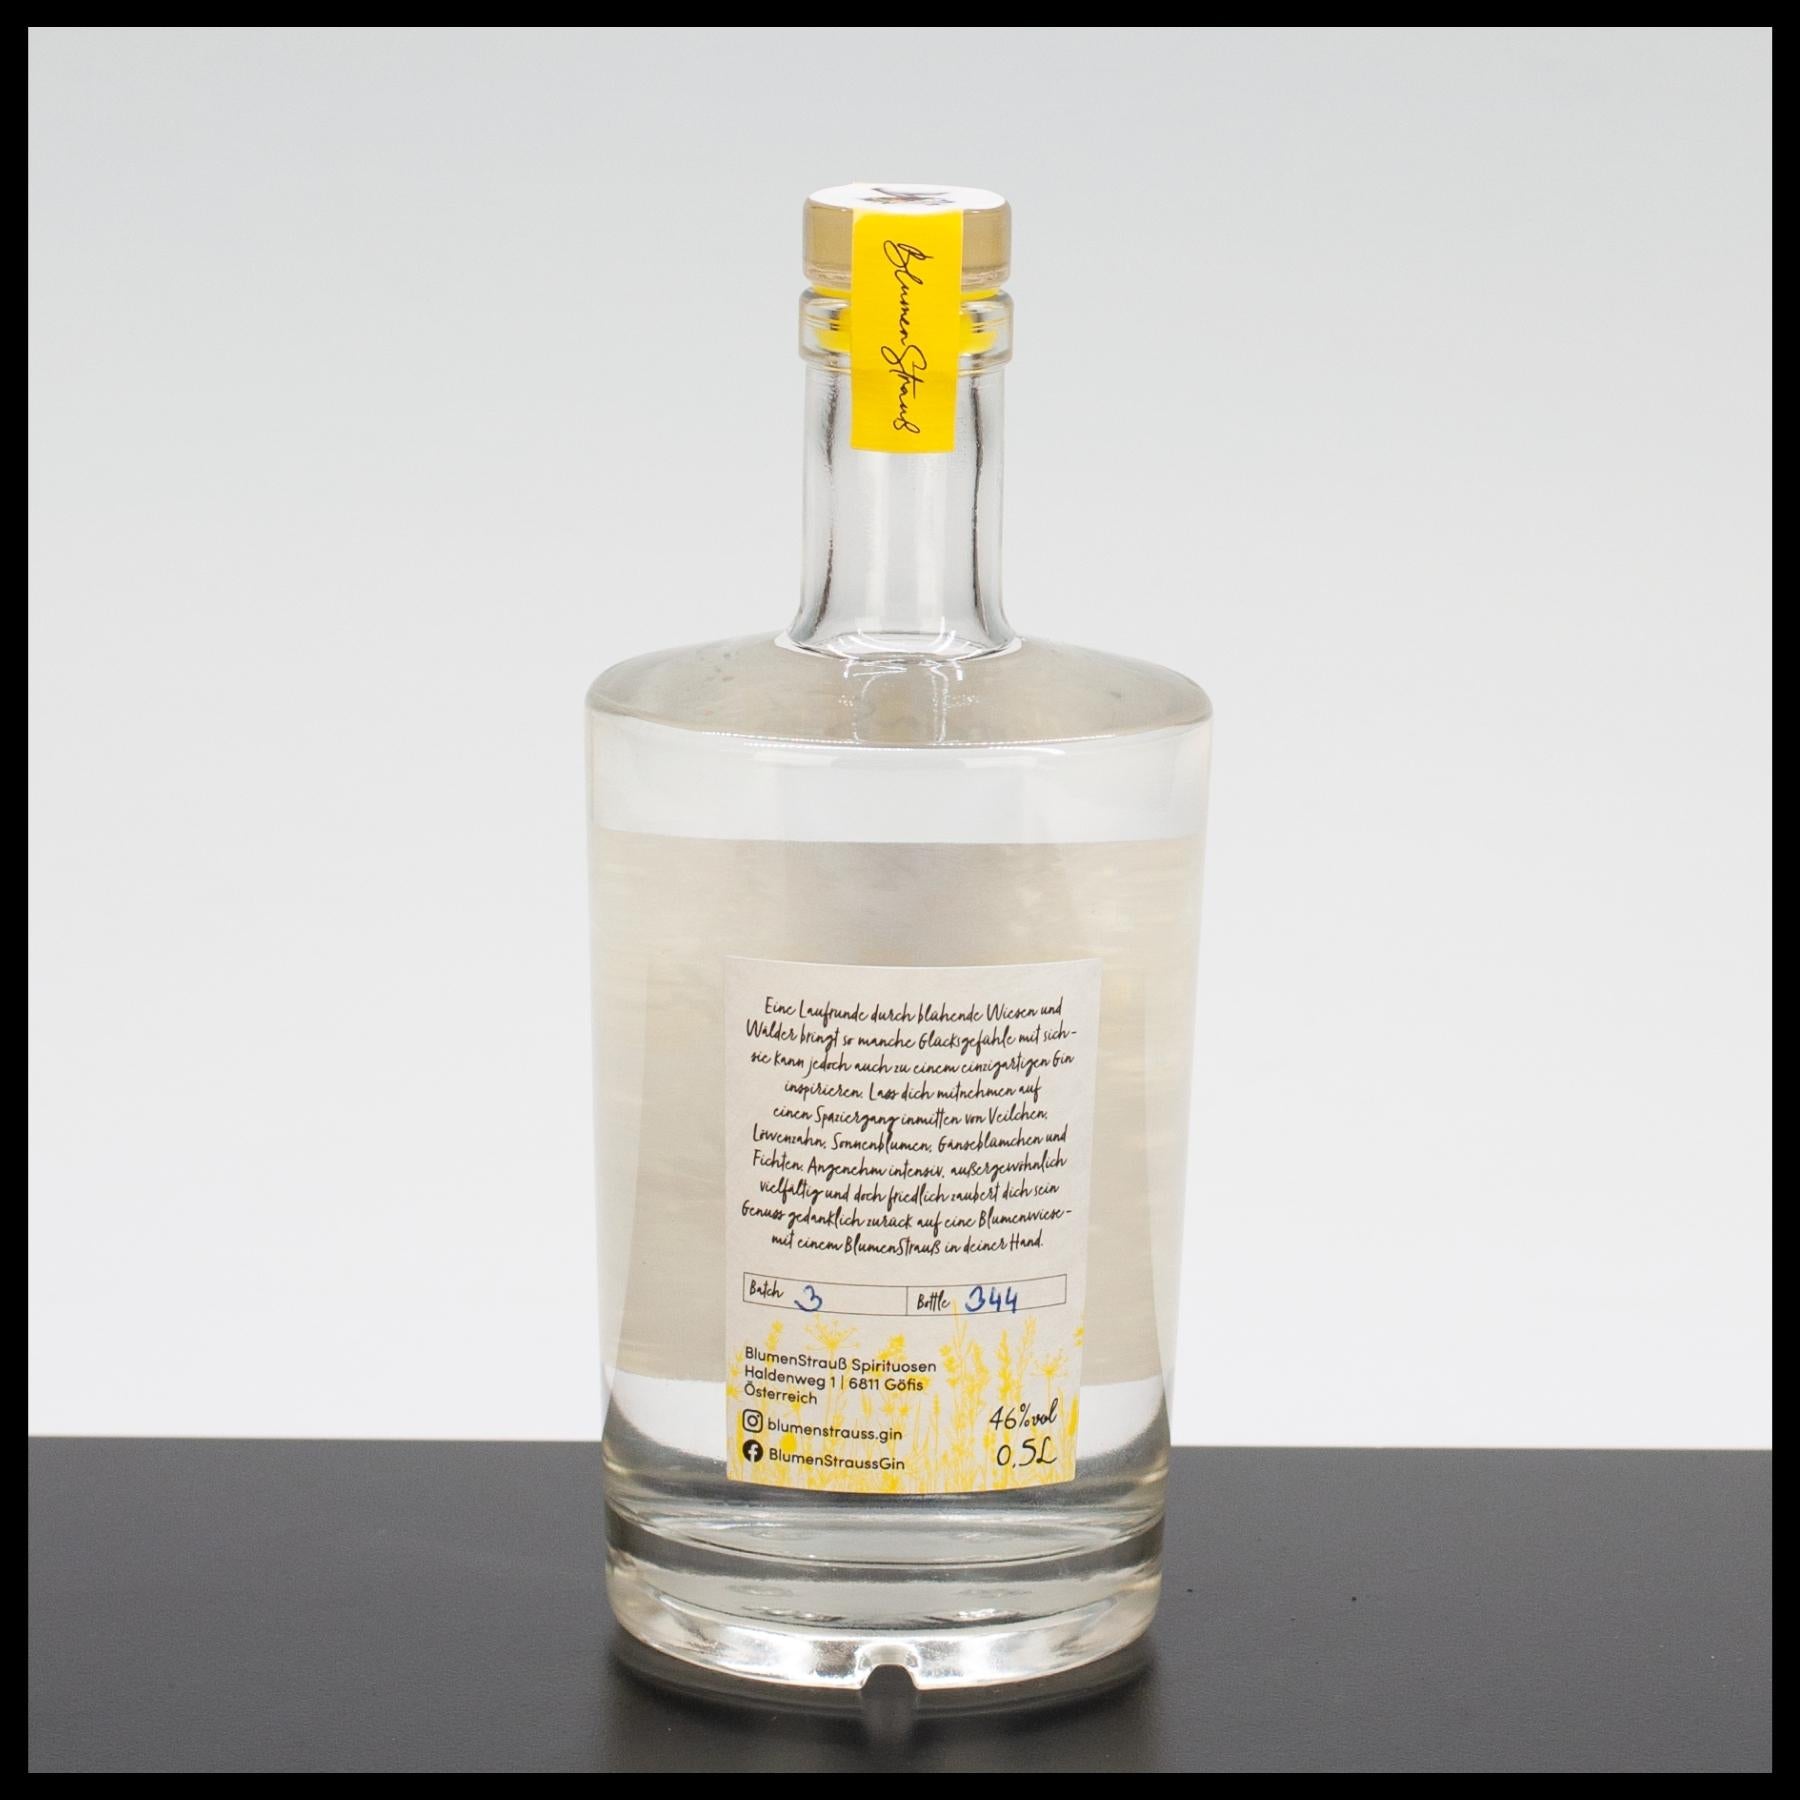 Blumenstrauß Gin 0,5L - 46% Vol. - Trinklusiv